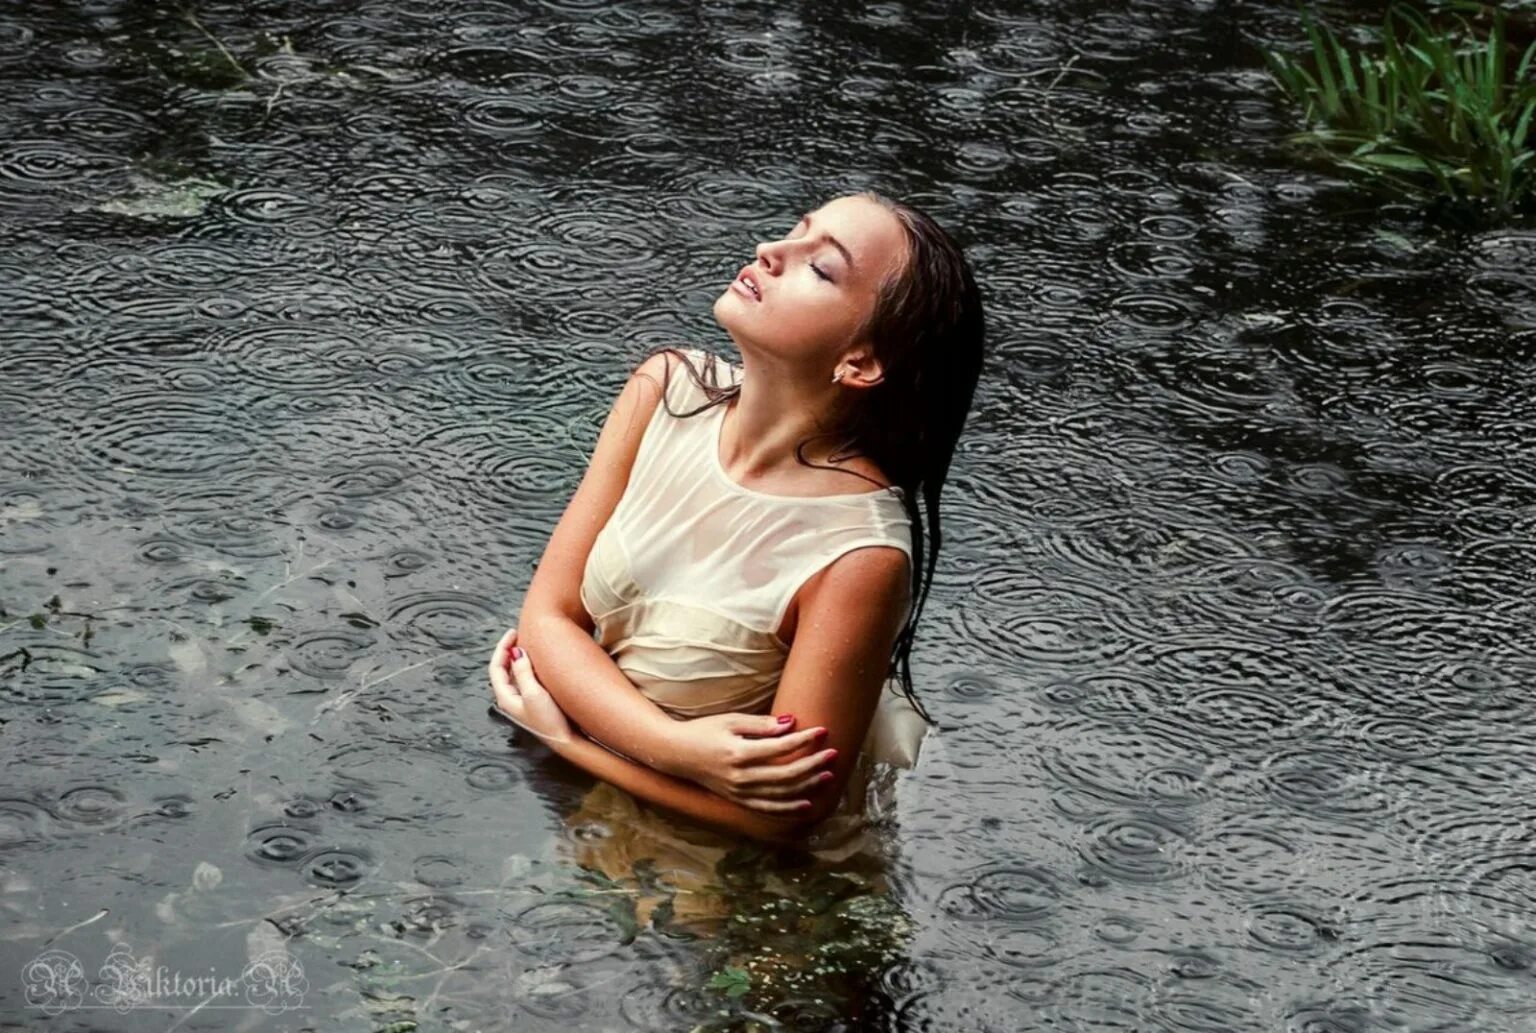 Девушка пода. Девушка под дождем. Фотосессия в водоеме. Фотосессия в воде в рубашке. Двушка в мокрой рубашке.